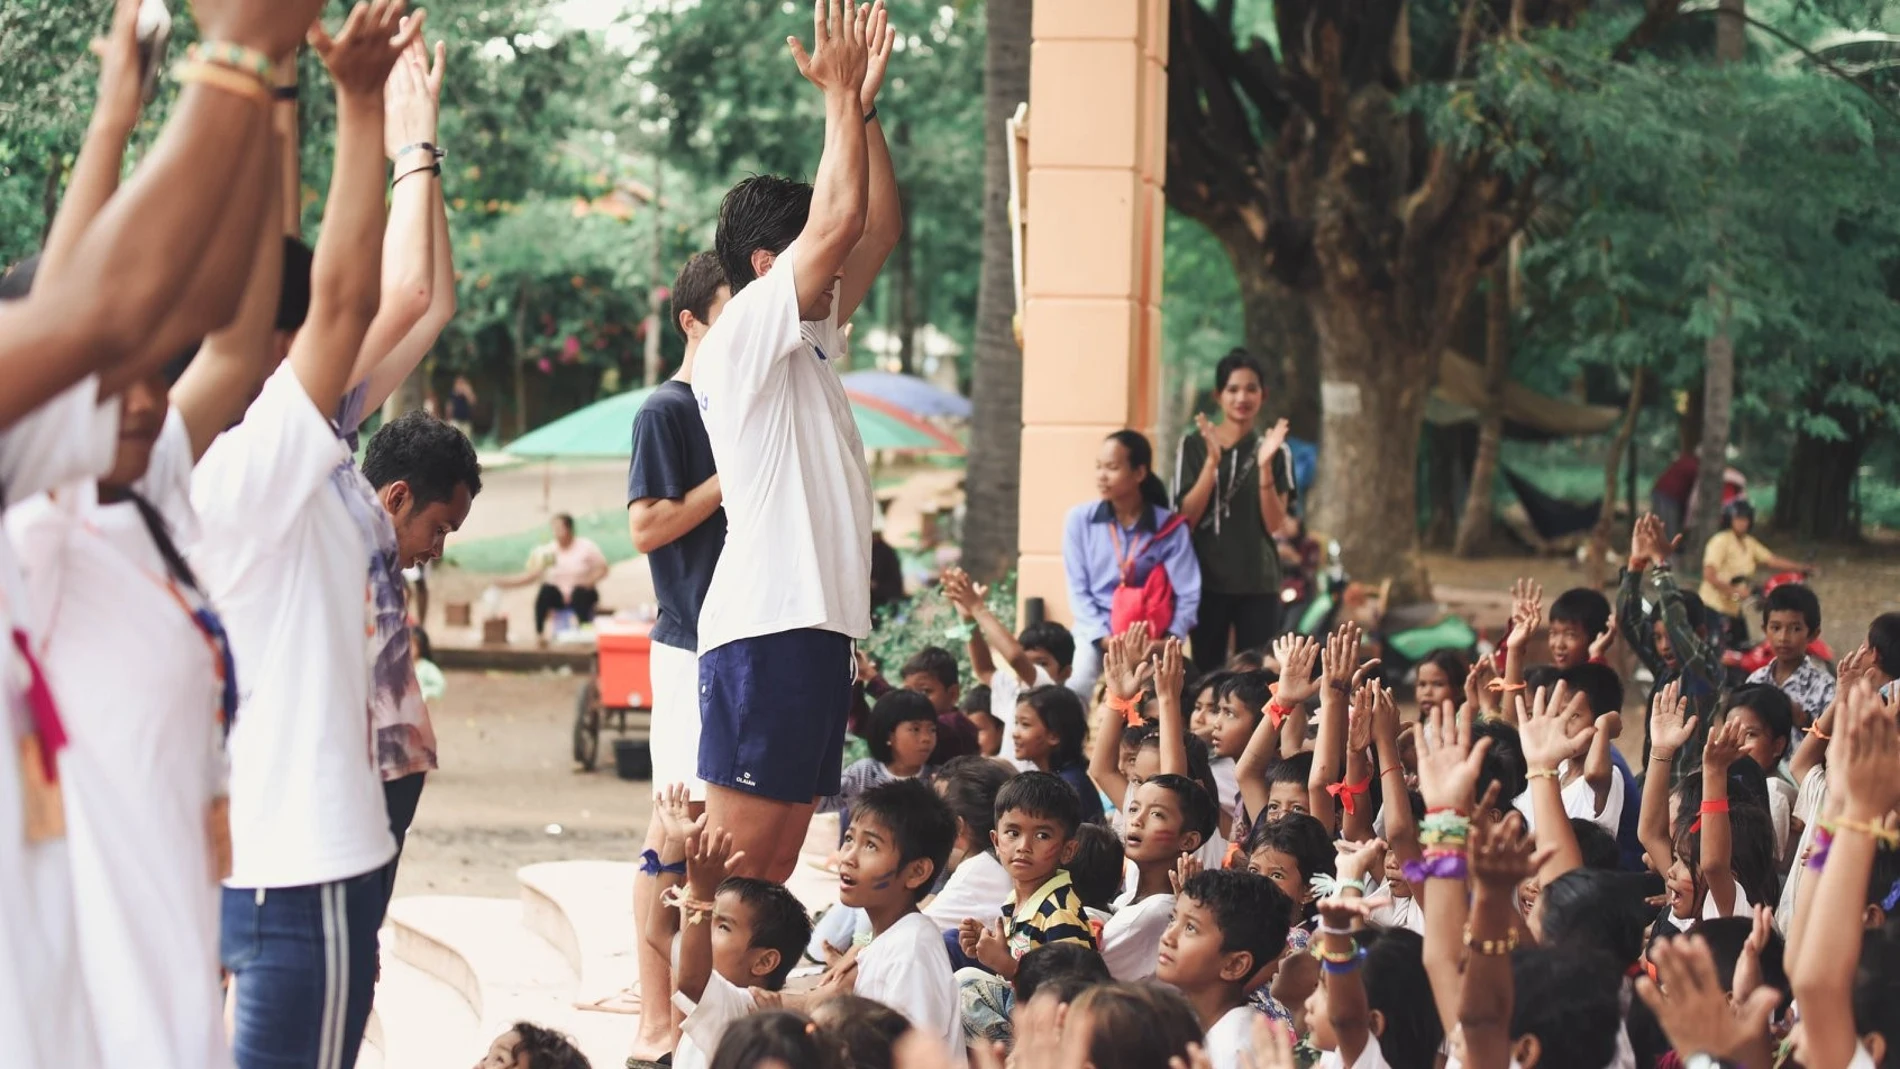 Se trata de los ganadores de los VII Premios al Voluntariado Universitario, que concede la Fundación Mutua Madrileña y cuyo primer galardón ha recaído en la iniciativa “Summercamp Battambang”.